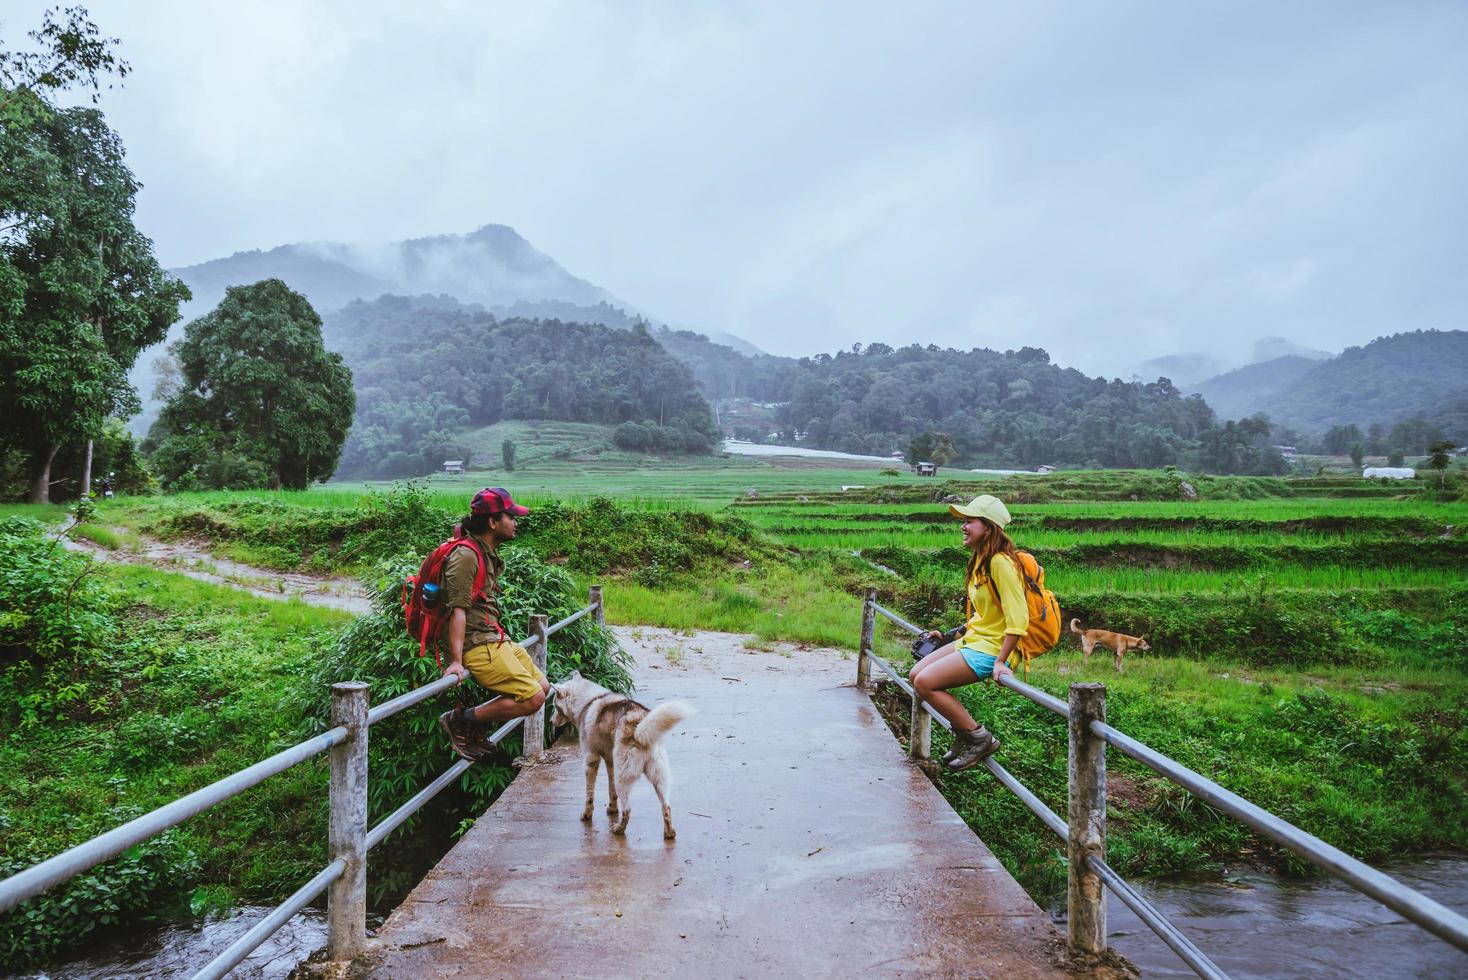 Liebhaber asiatischer Mann asiatische Frauen reisen Natur. wandern ein foto das reisfeld und halt machen eine pause entspannen auf der brücke bei ban mae klang luang in der regenzeit.